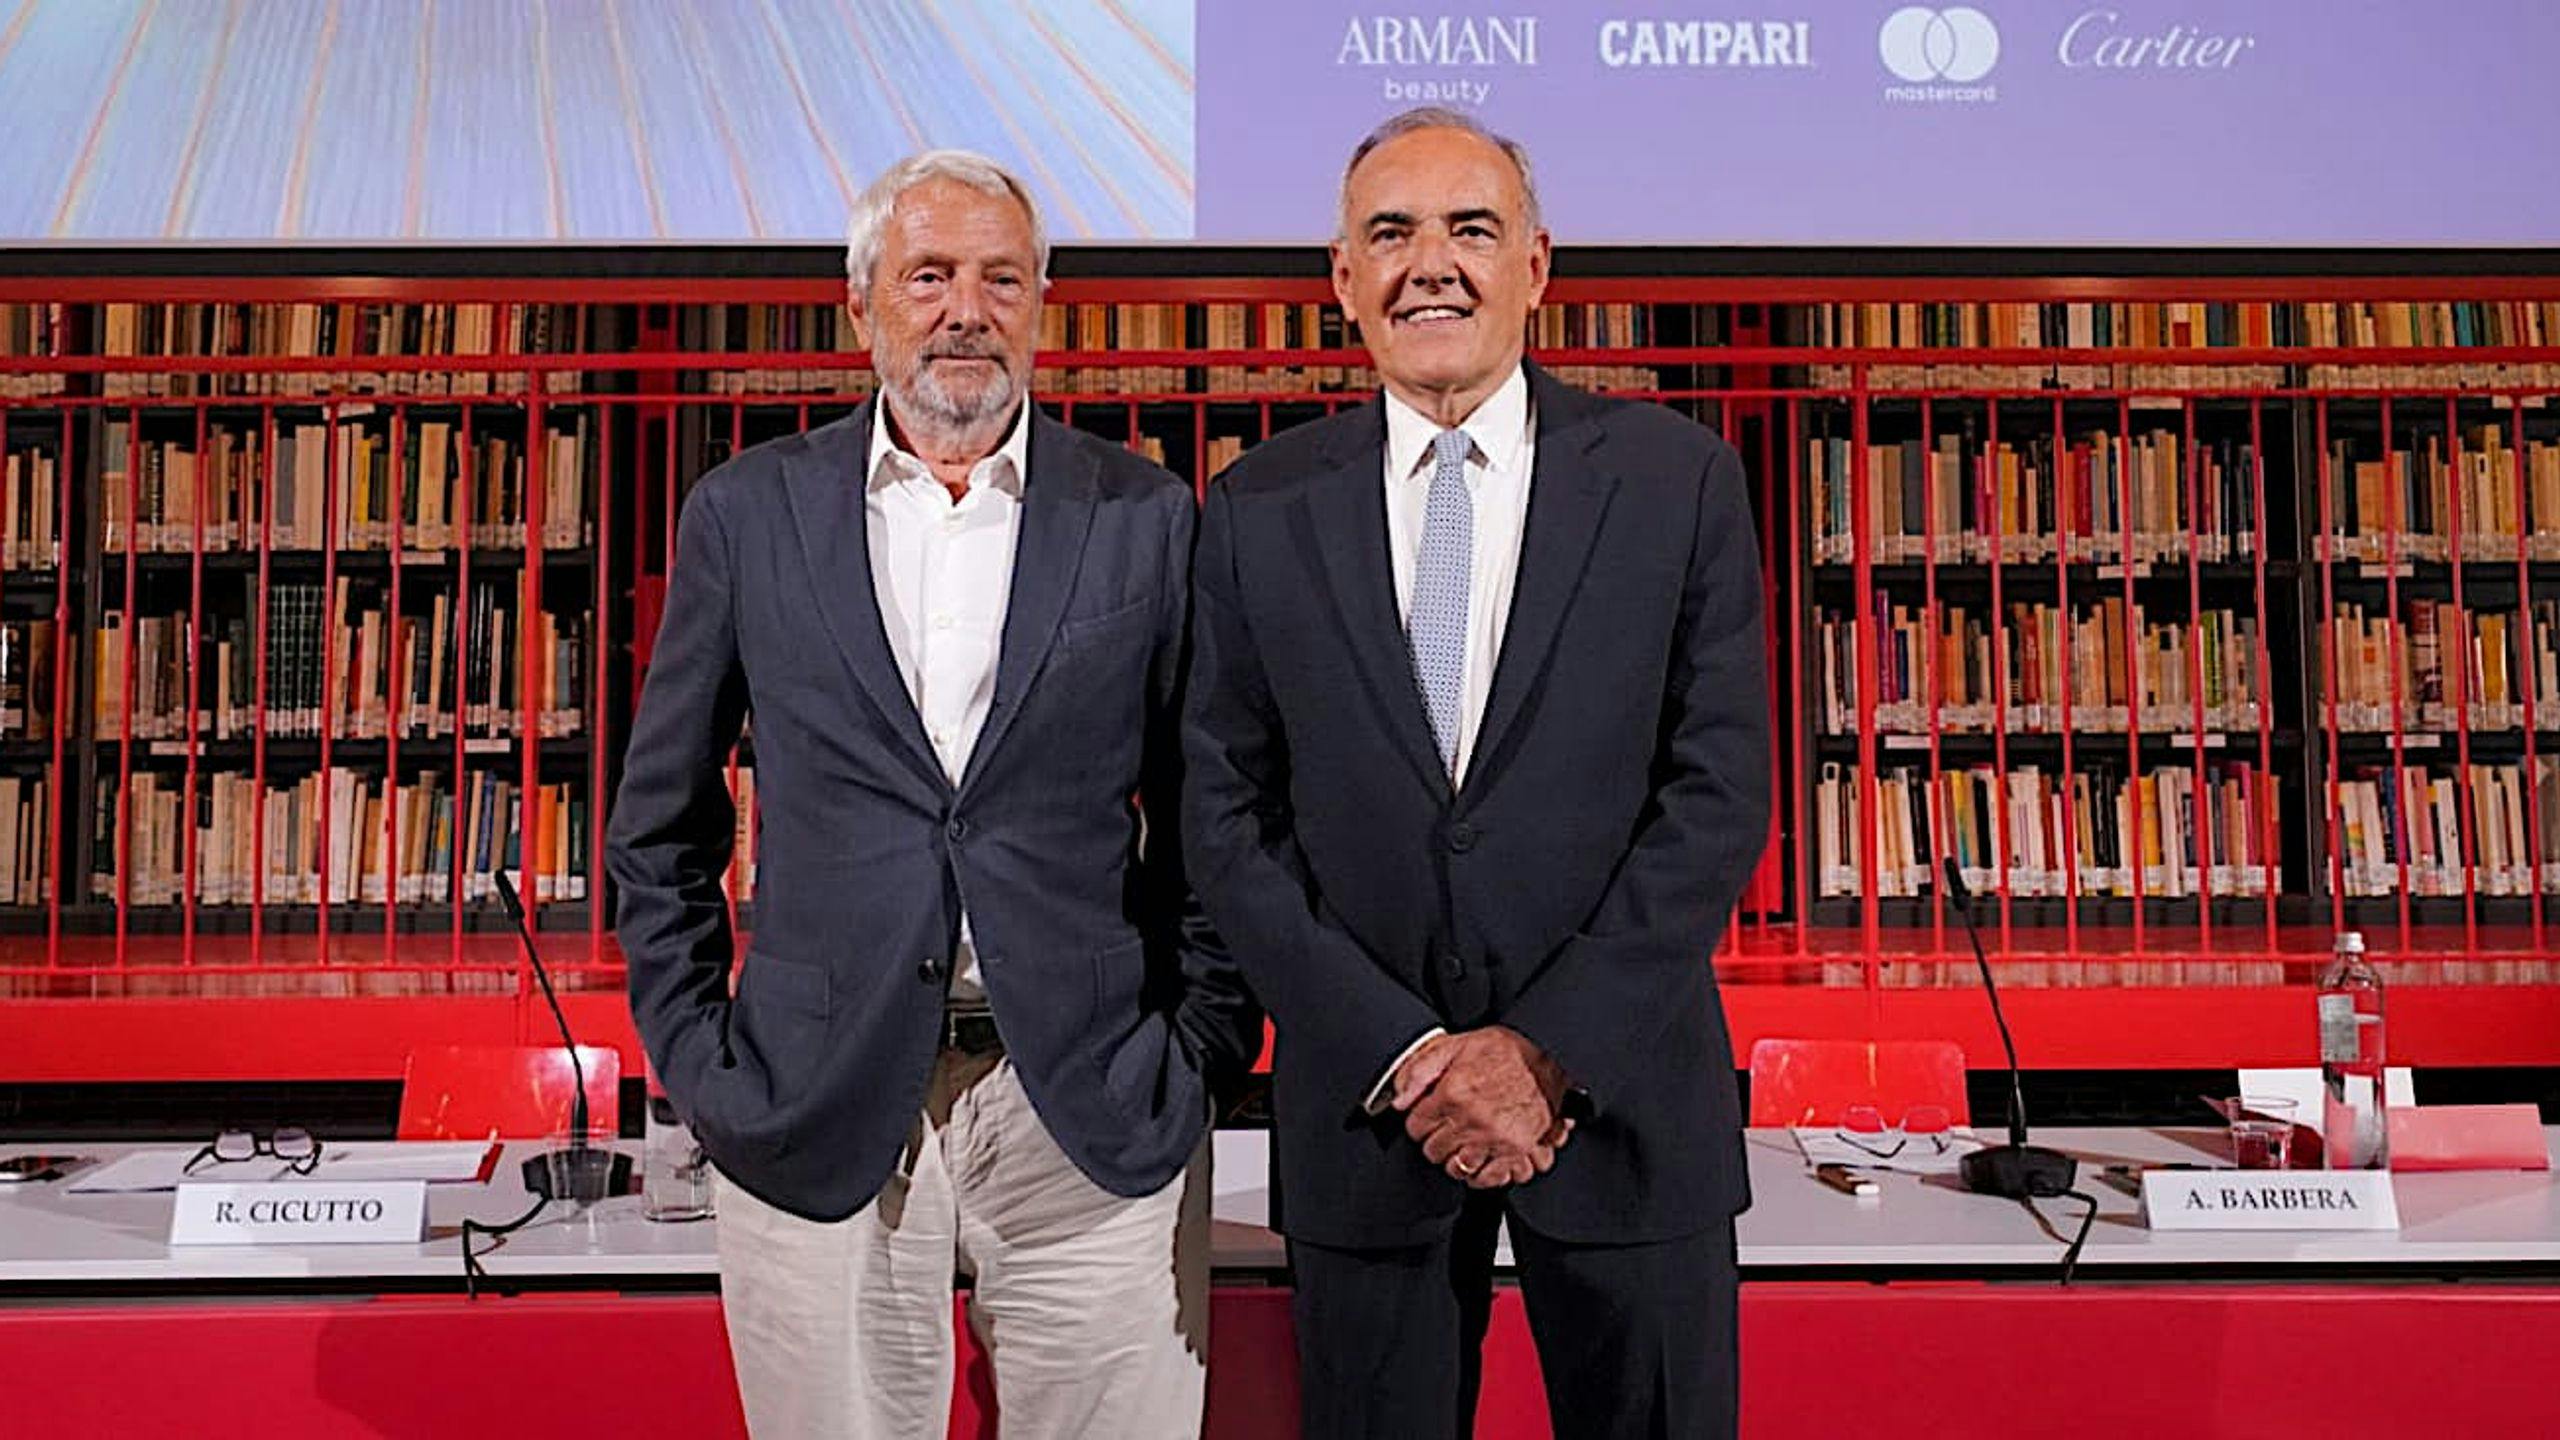 El presidente de la Biennale di Venezia, Roberto Cicutto, y el director artístico de la Mostra, Alberto Barbera, durante la presentación de la programación de 2023